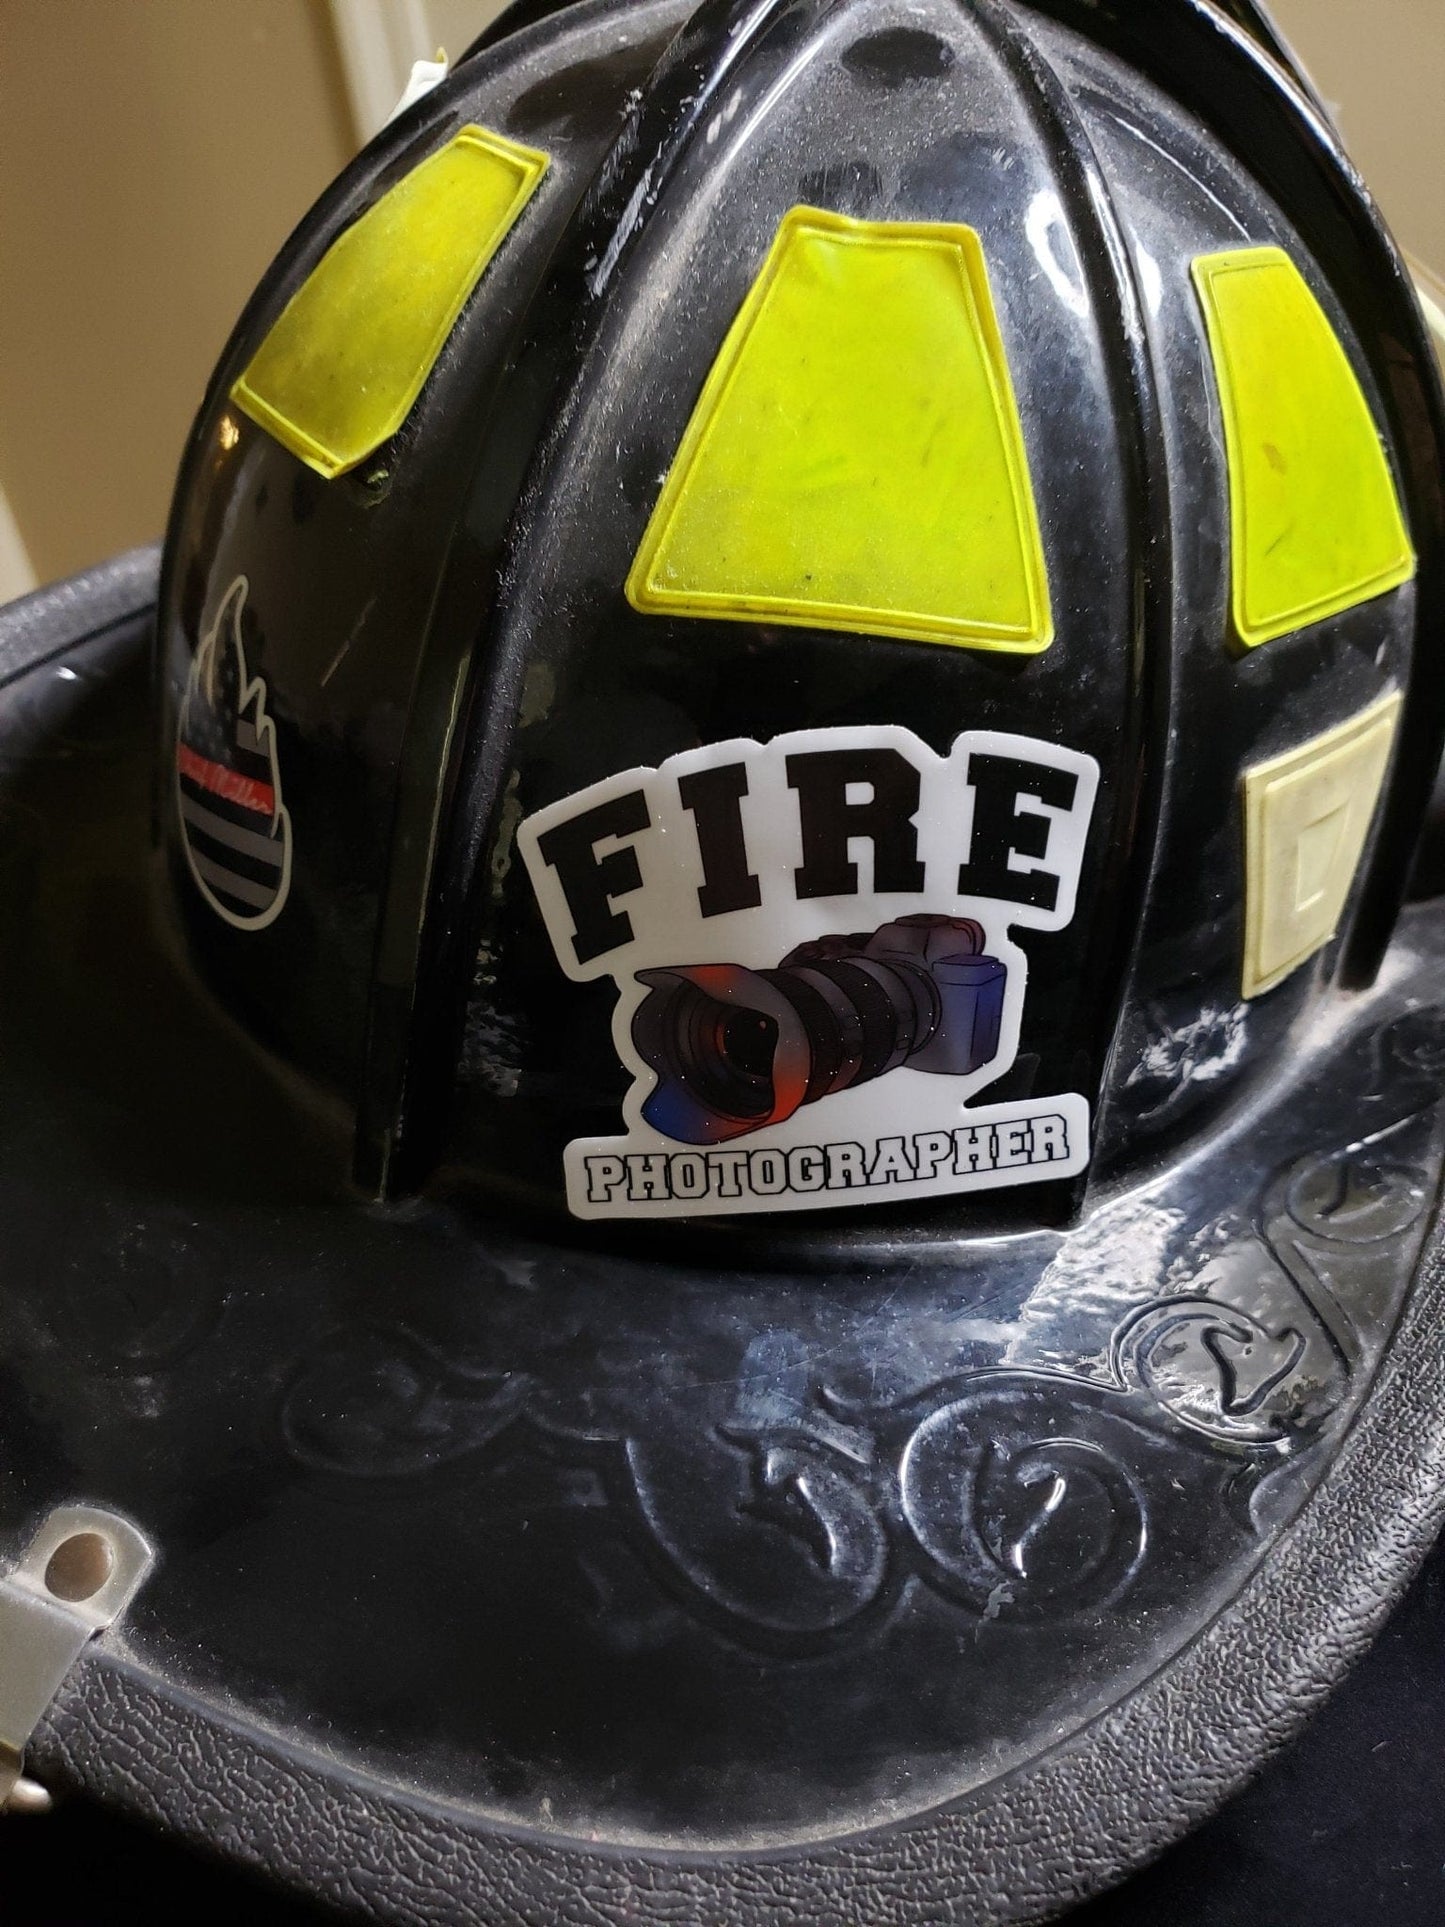 Chief Miller Fire Photographer- Helmet Decal Apparel